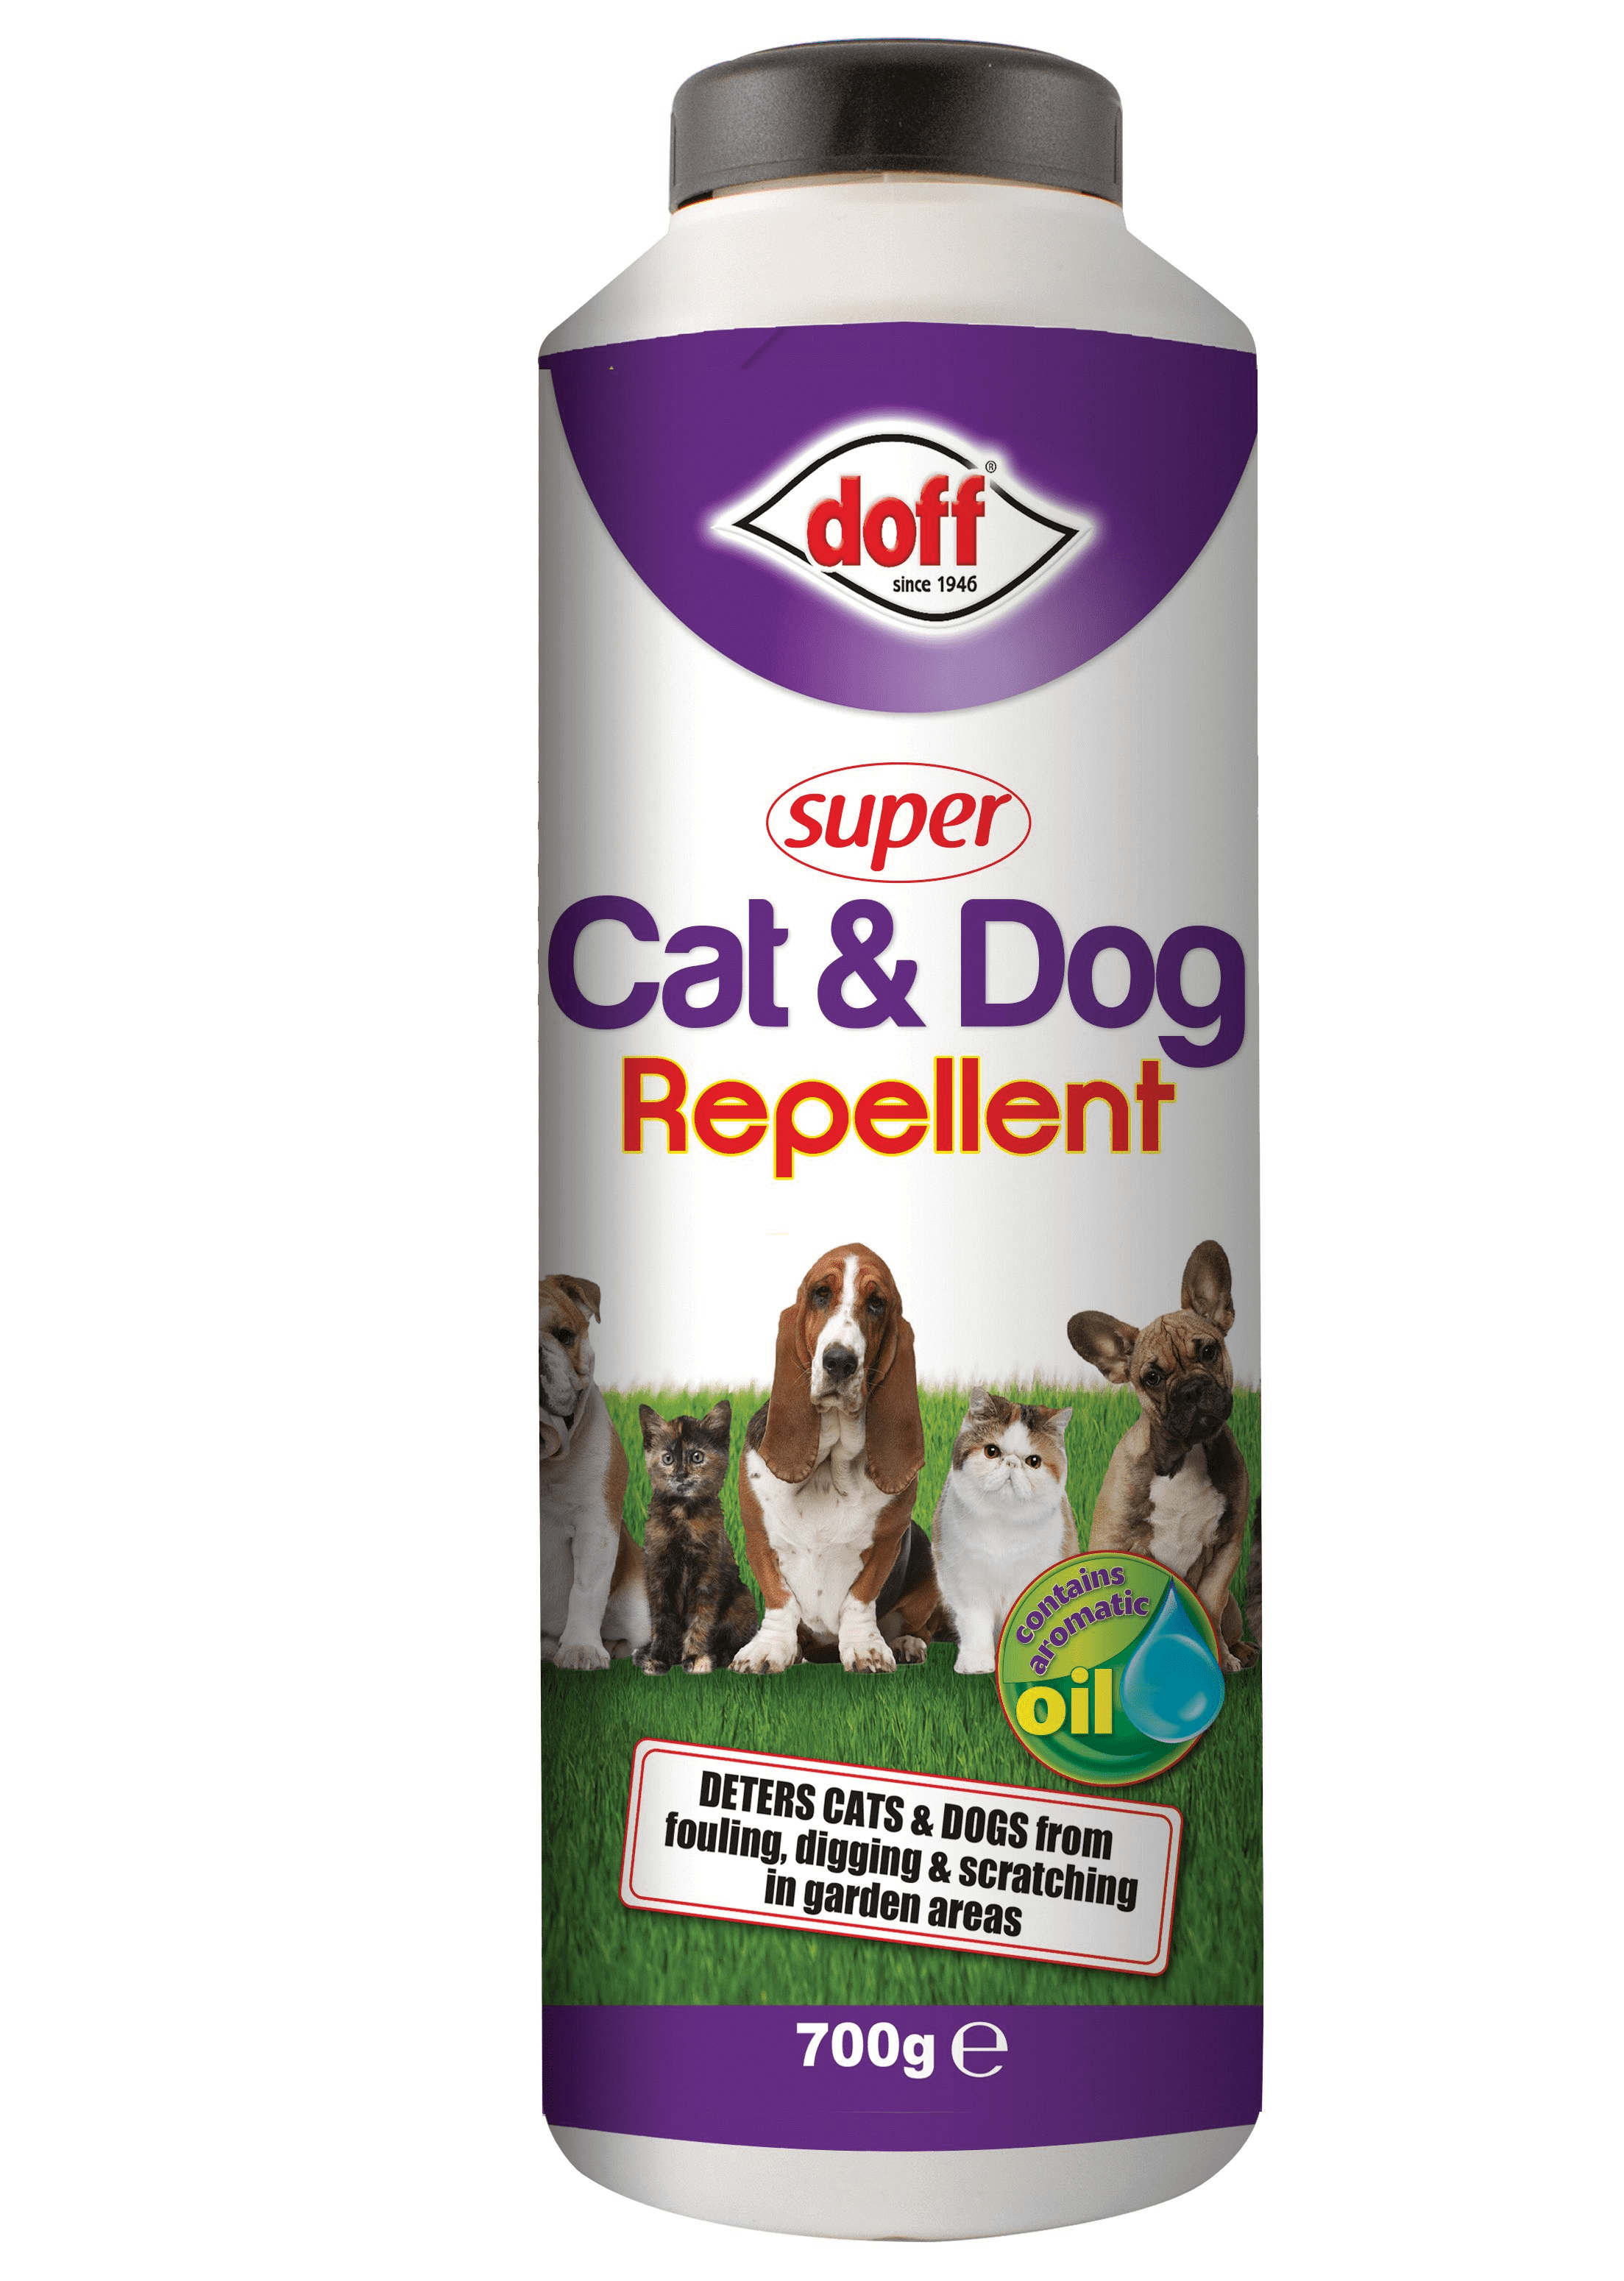 Doff Super Cat and Dog Repellent